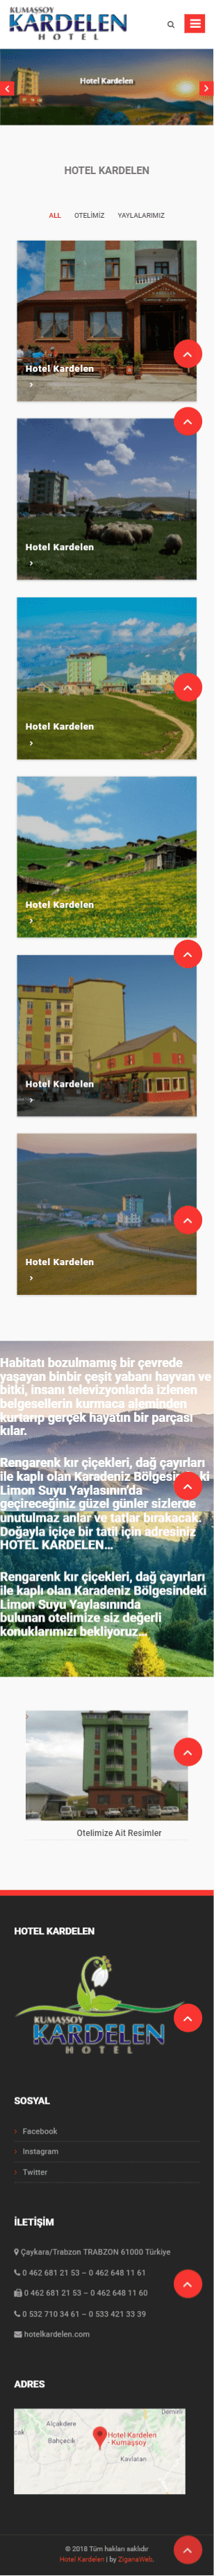 Hotel Kardelen Mobile Görünümü